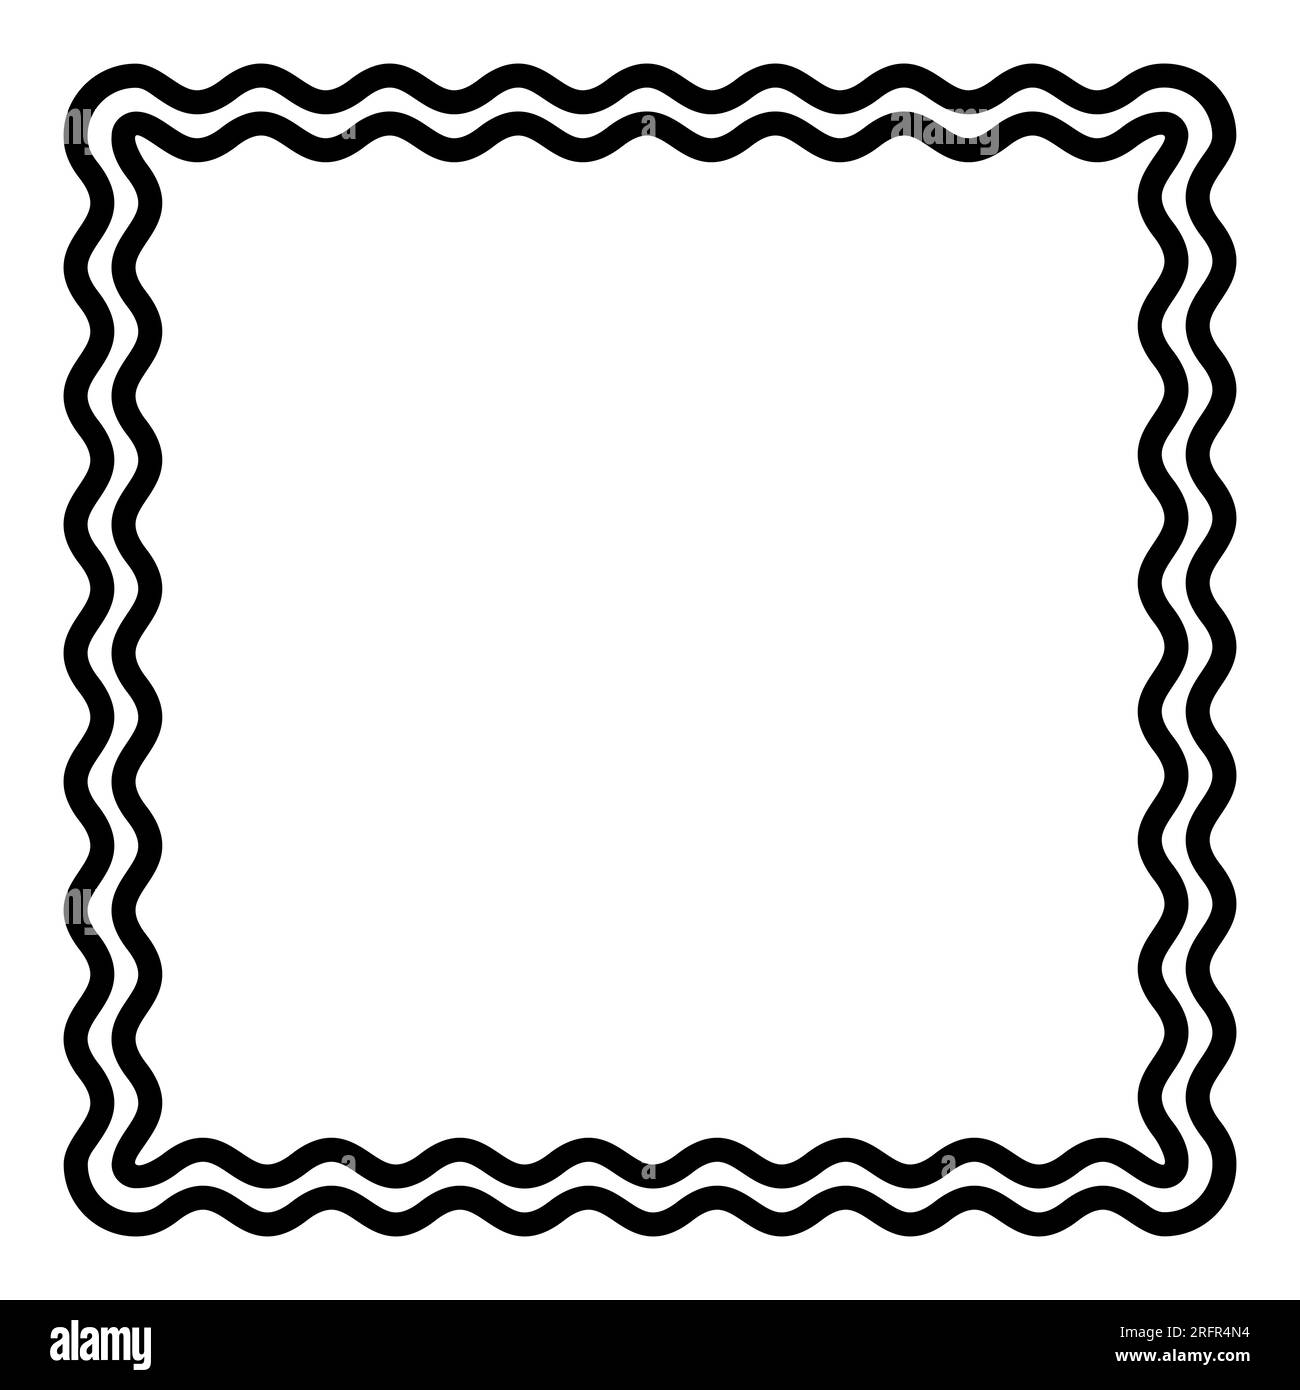 Due linee ondulate che formano una cornice quadrata. Bordo decorativo e simile a un serpente, realizzato da due linee a serpentina. Illustrazione isolata in bianco e nero. Foto Stock